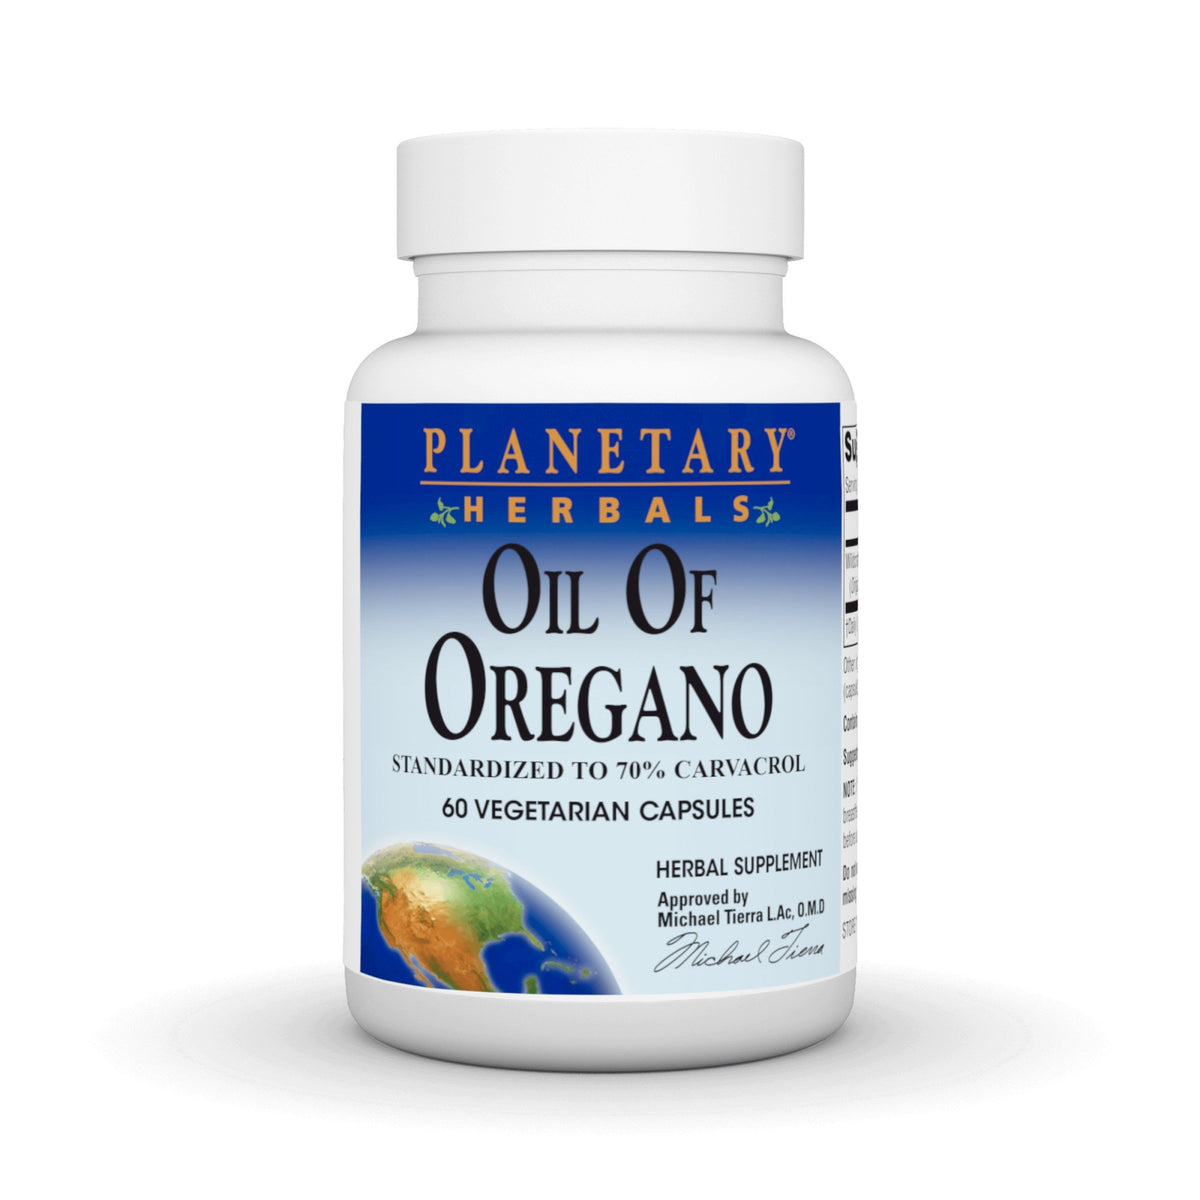 Planetary Herbals Oil of Oregano 60 Vegetarian Capsules